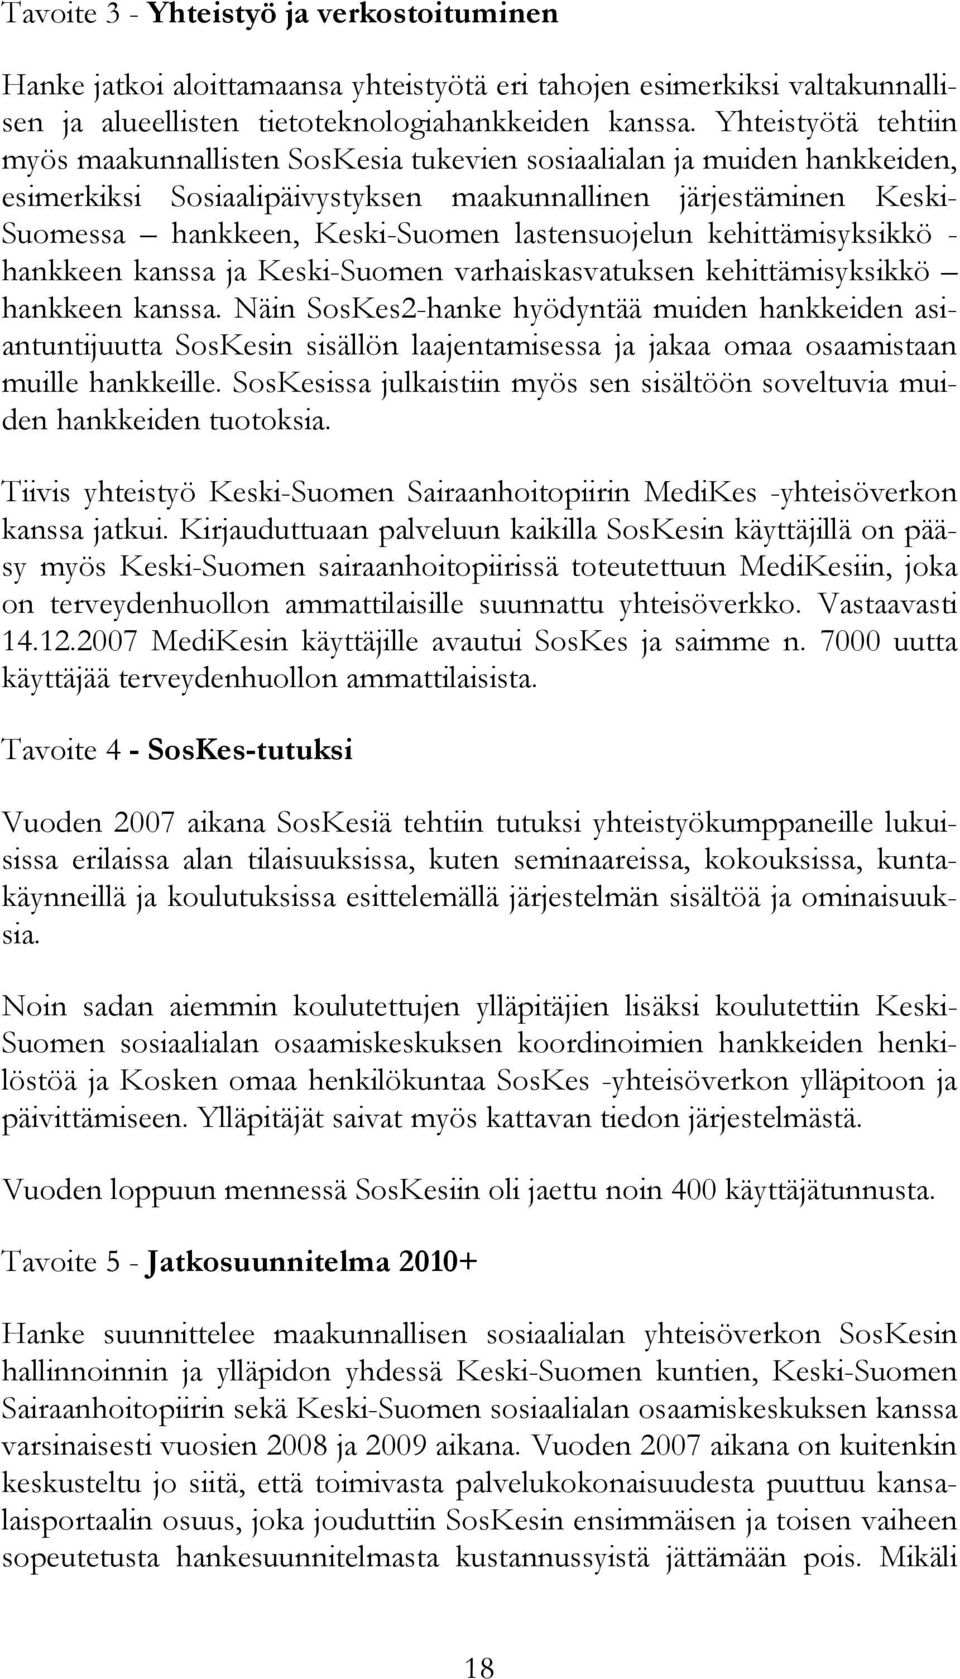 lastensuojelun kehittämisyksikkö - hankkeen kanssa ja Keski-Suomen varhaiskasvatuksen kehittämisyksikkö hankkeen kanssa.